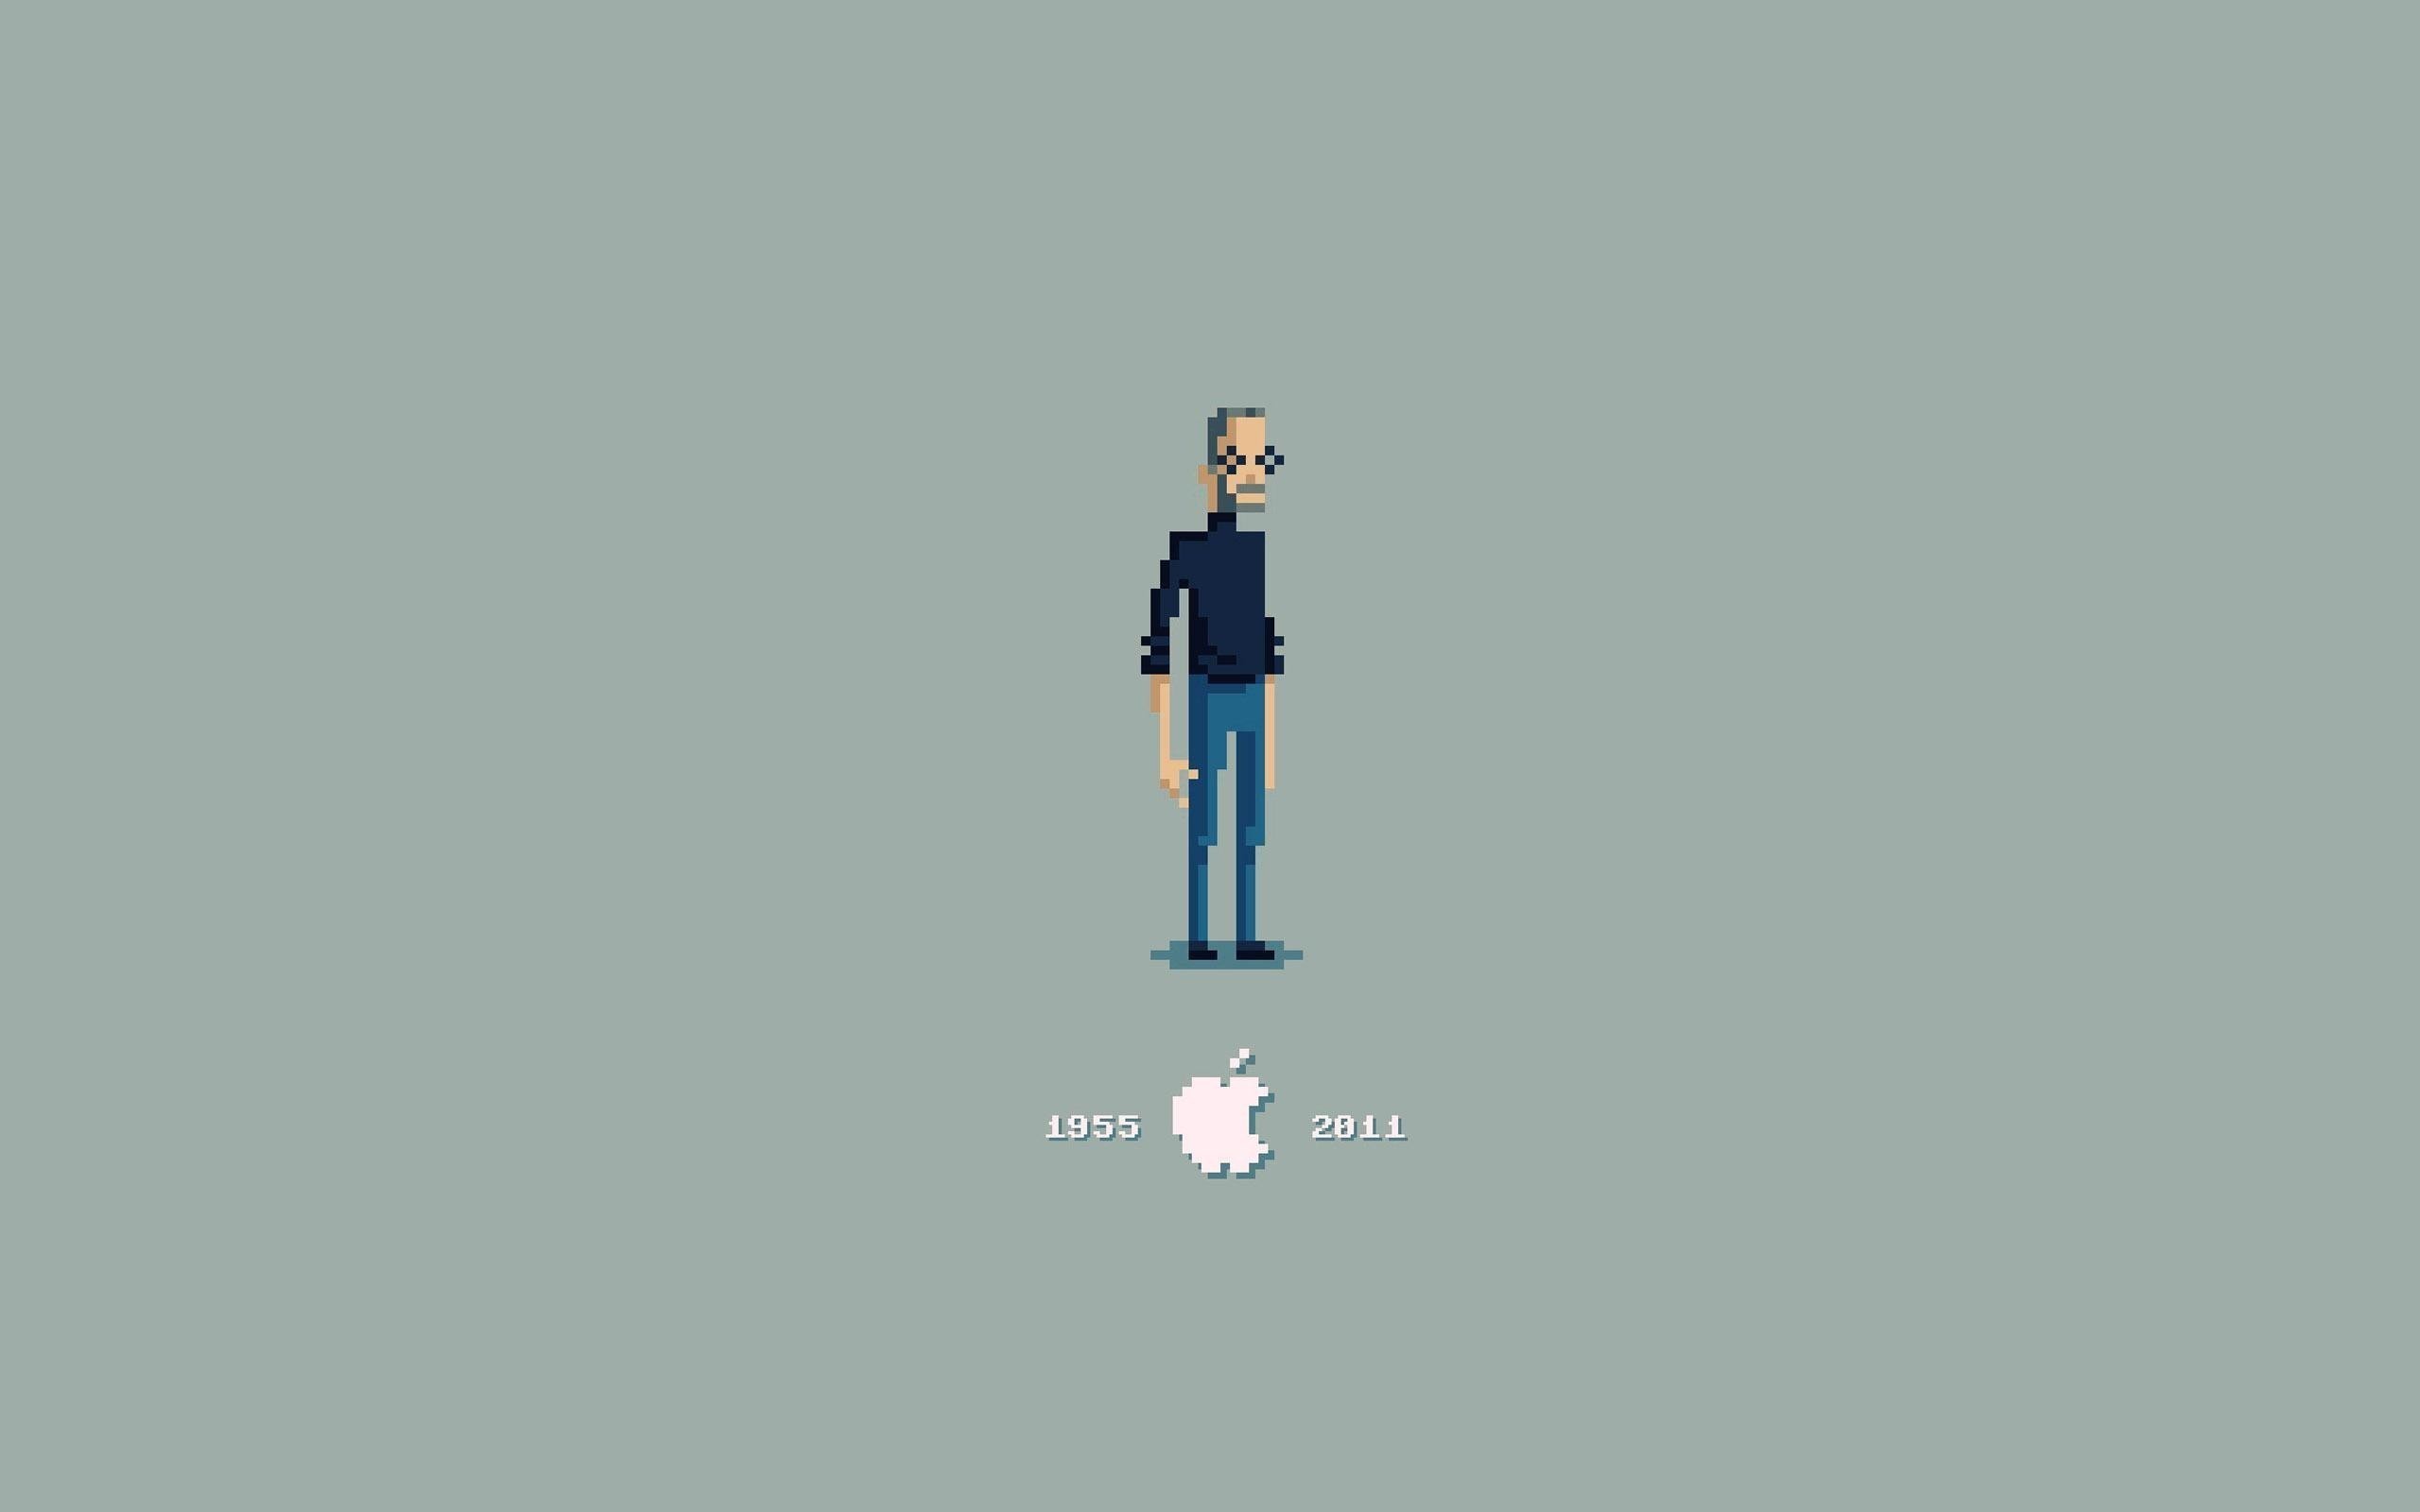 Steve Jobs Apple Inc Pixel Art 8 Bit Minimalism 2560x1600